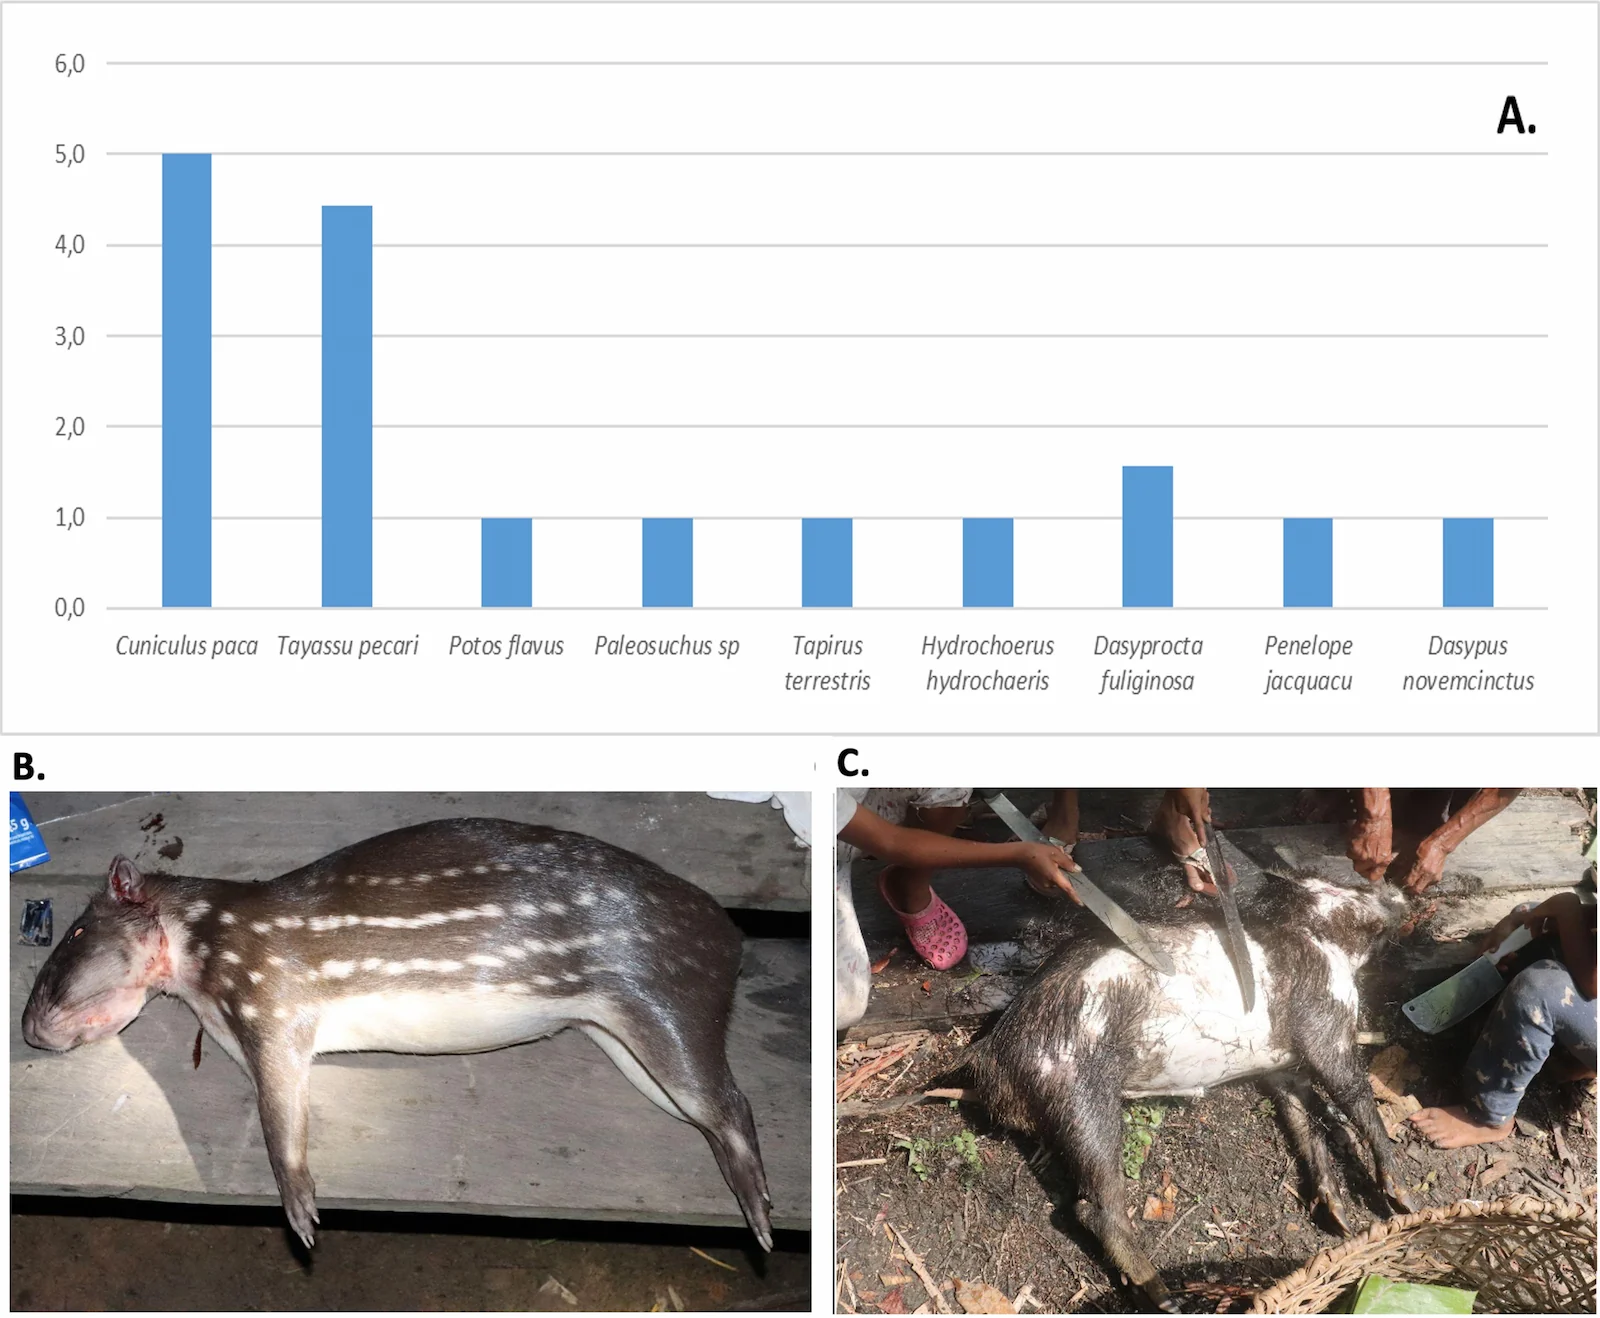 Figura 1. Uso de fauna en la comunidad de Arara. A. Niveles de uso registrados y especies más cazadas en la zona: B. Boruga (Cuniculus paca) y C. Puerco de monte (Tayassu pecari)